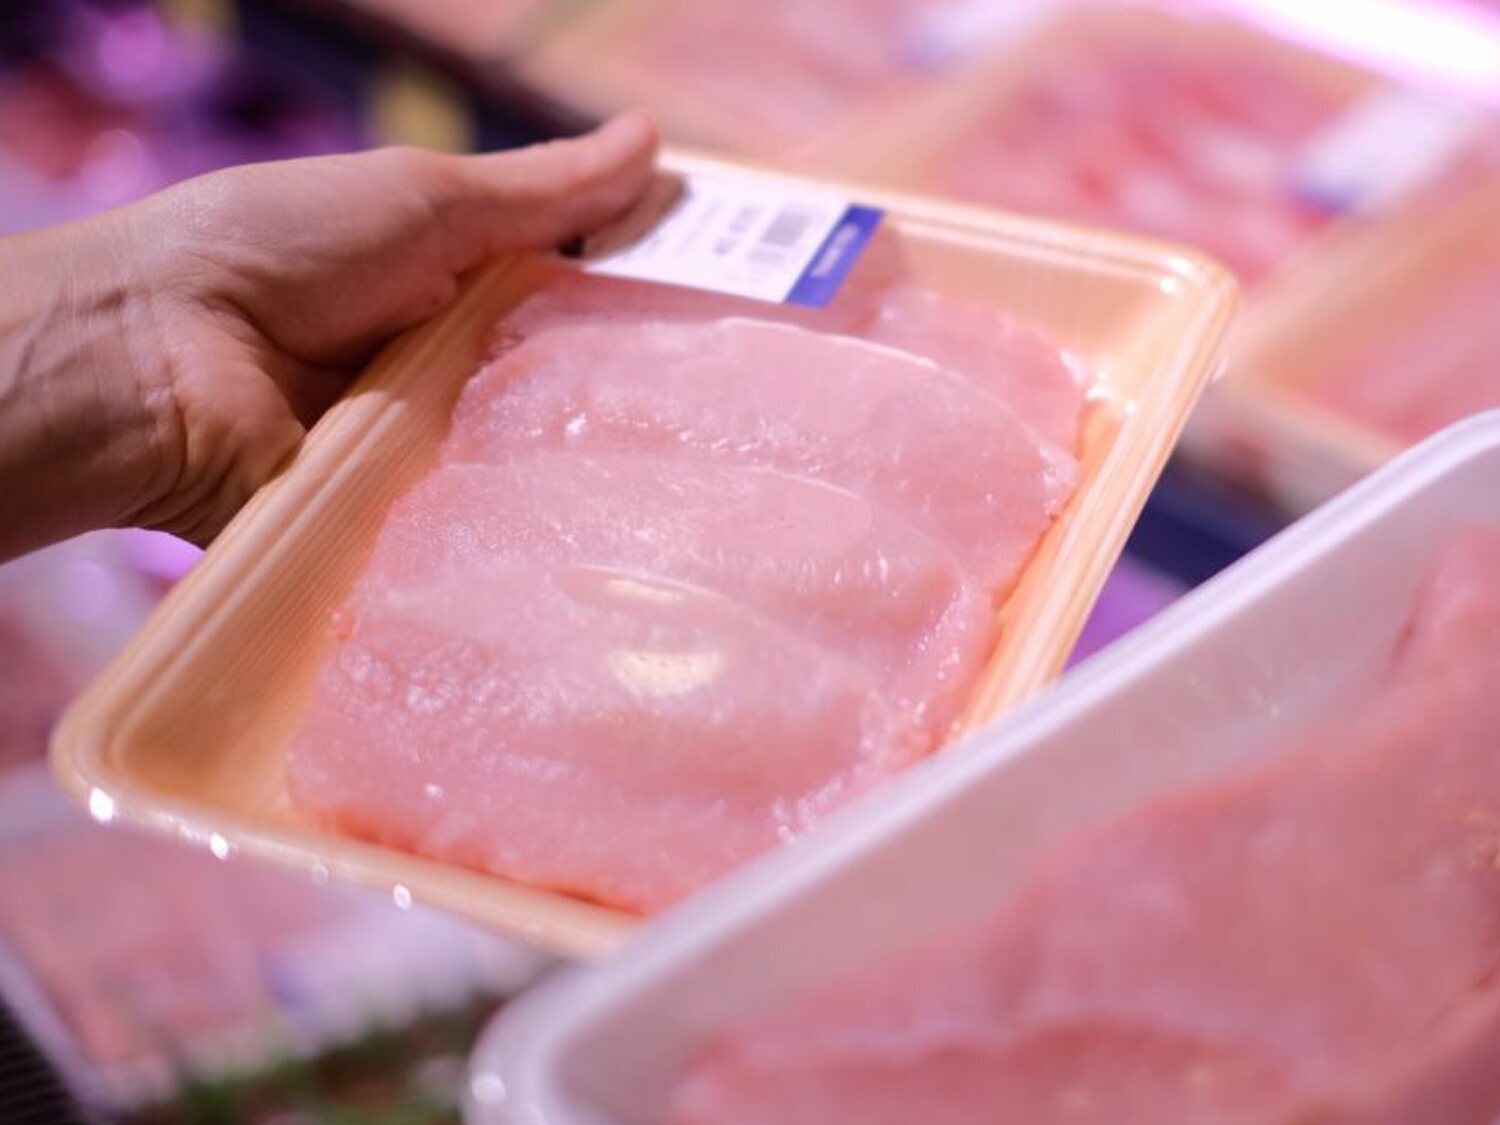 Un nutricionista advierte sobre el pollo envasado del supermercado: fíjate en la etiqueta